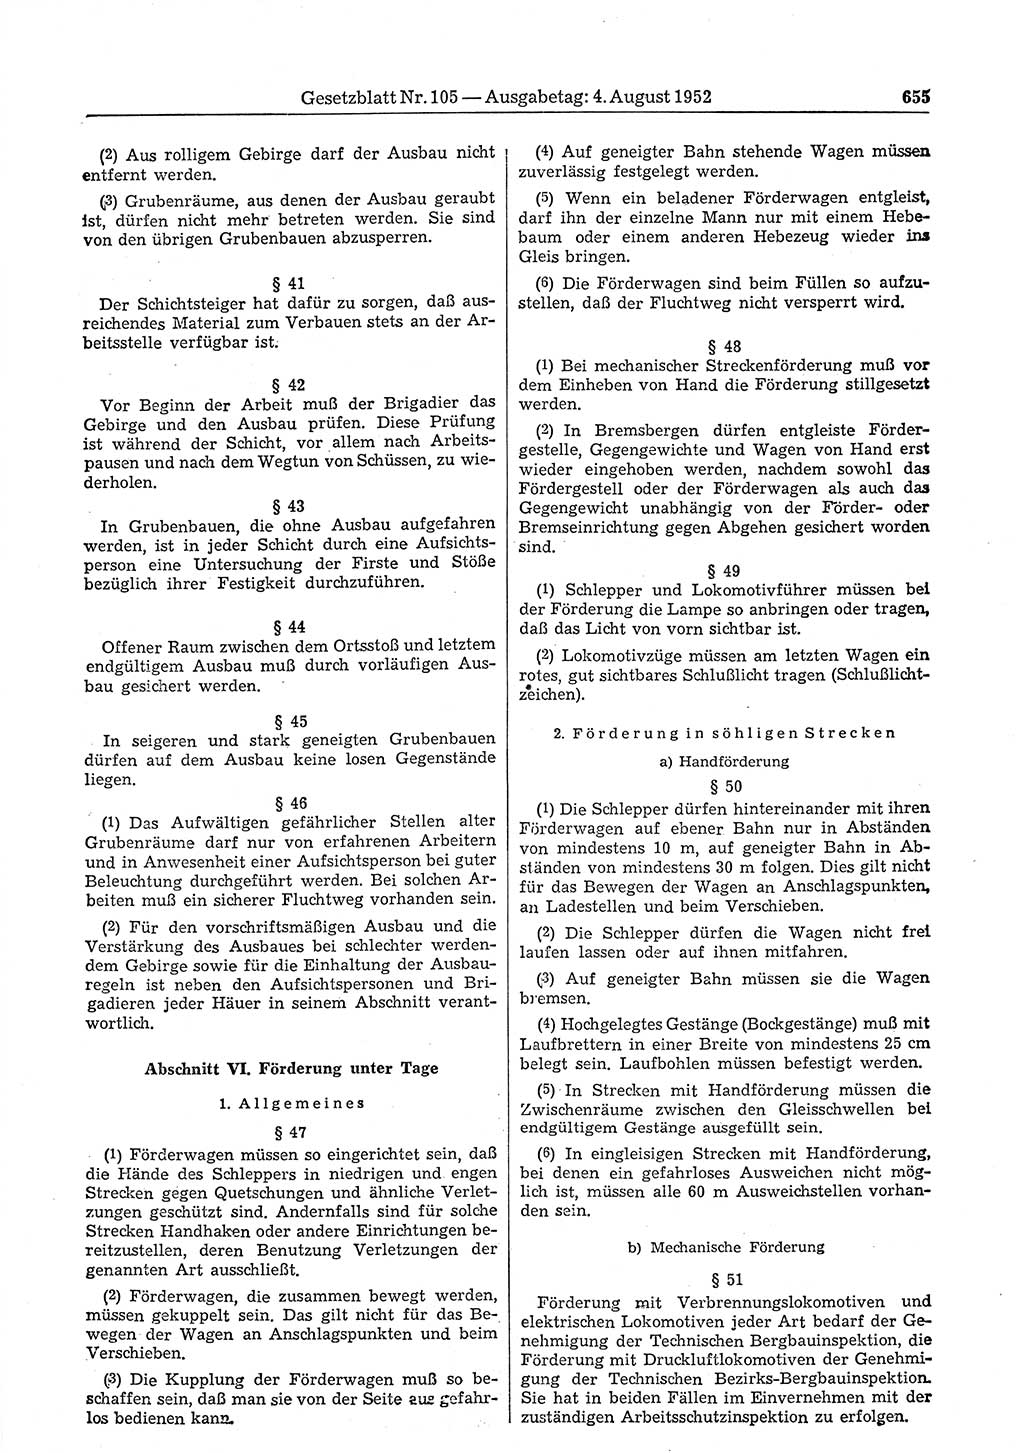 Gesetzblatt (GBl.) der Deutschen Demokratischen Republik (DDR) 1952, Seite 655 (GBl. DDR 1952, S. 655)